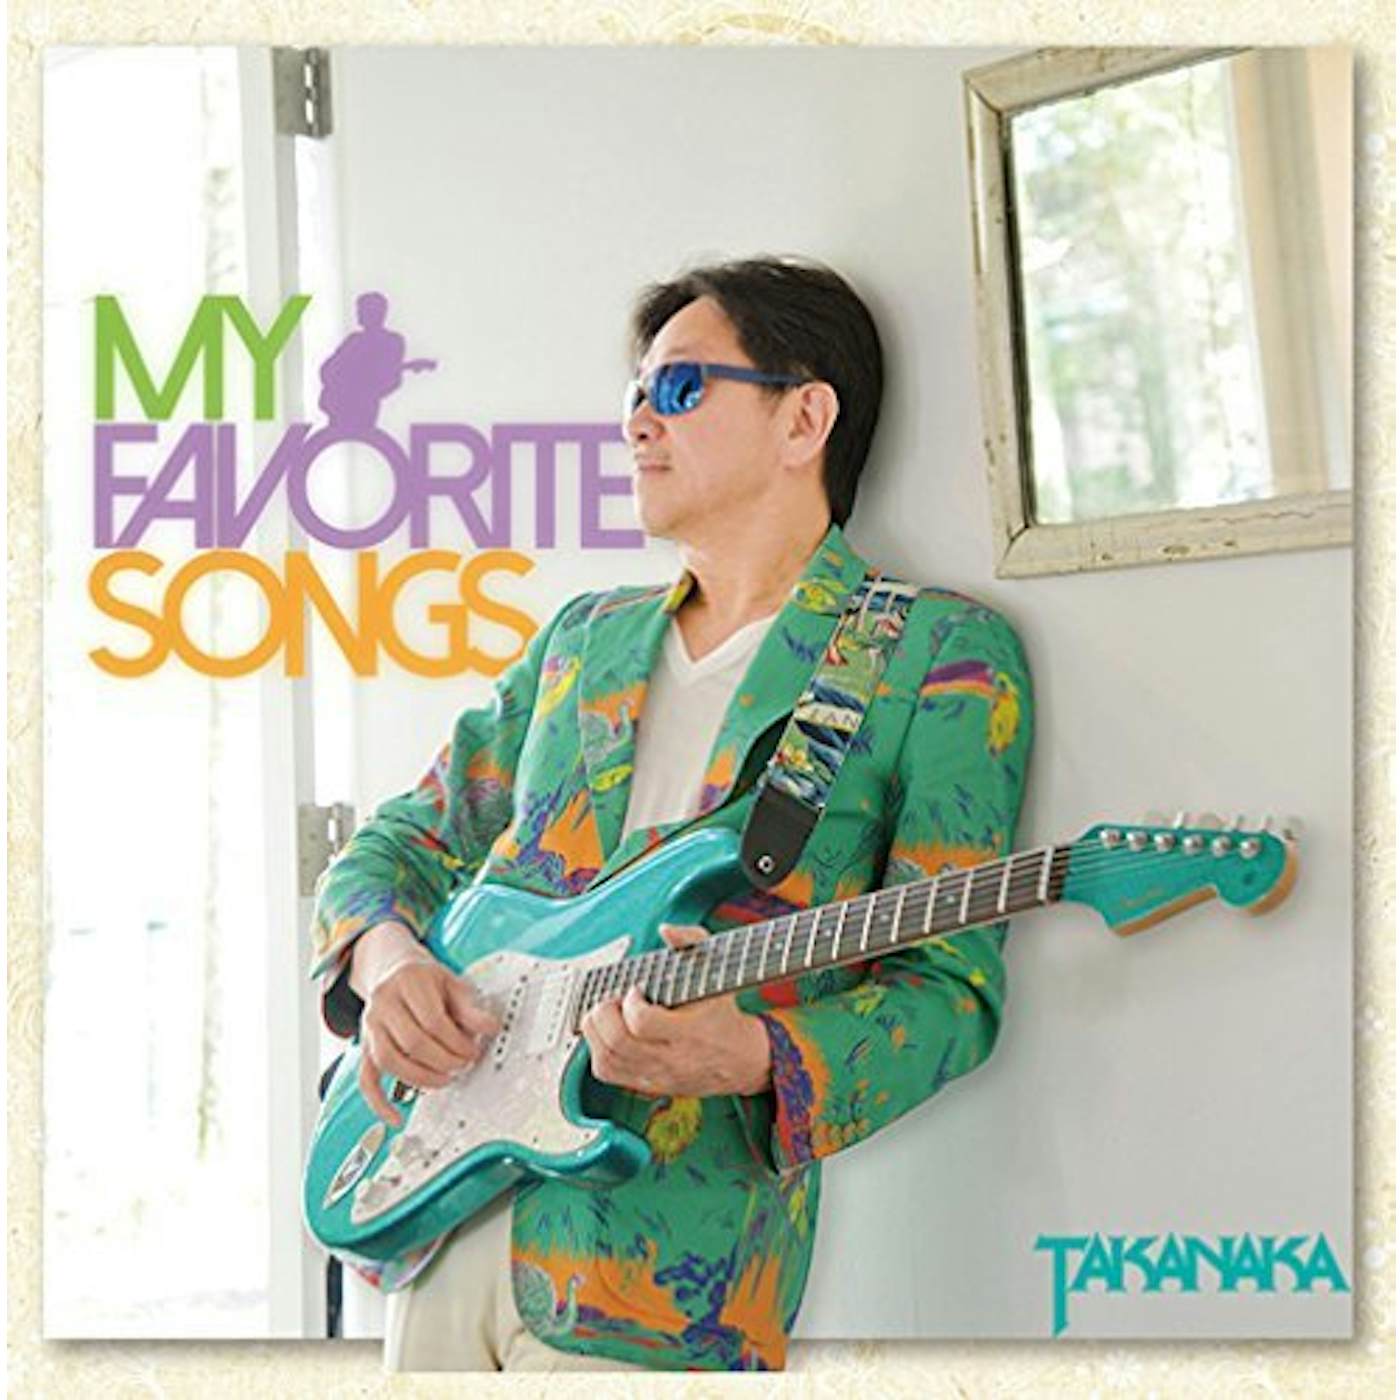 Masayoshi Takanaka MY FAVORITE SONGS CD